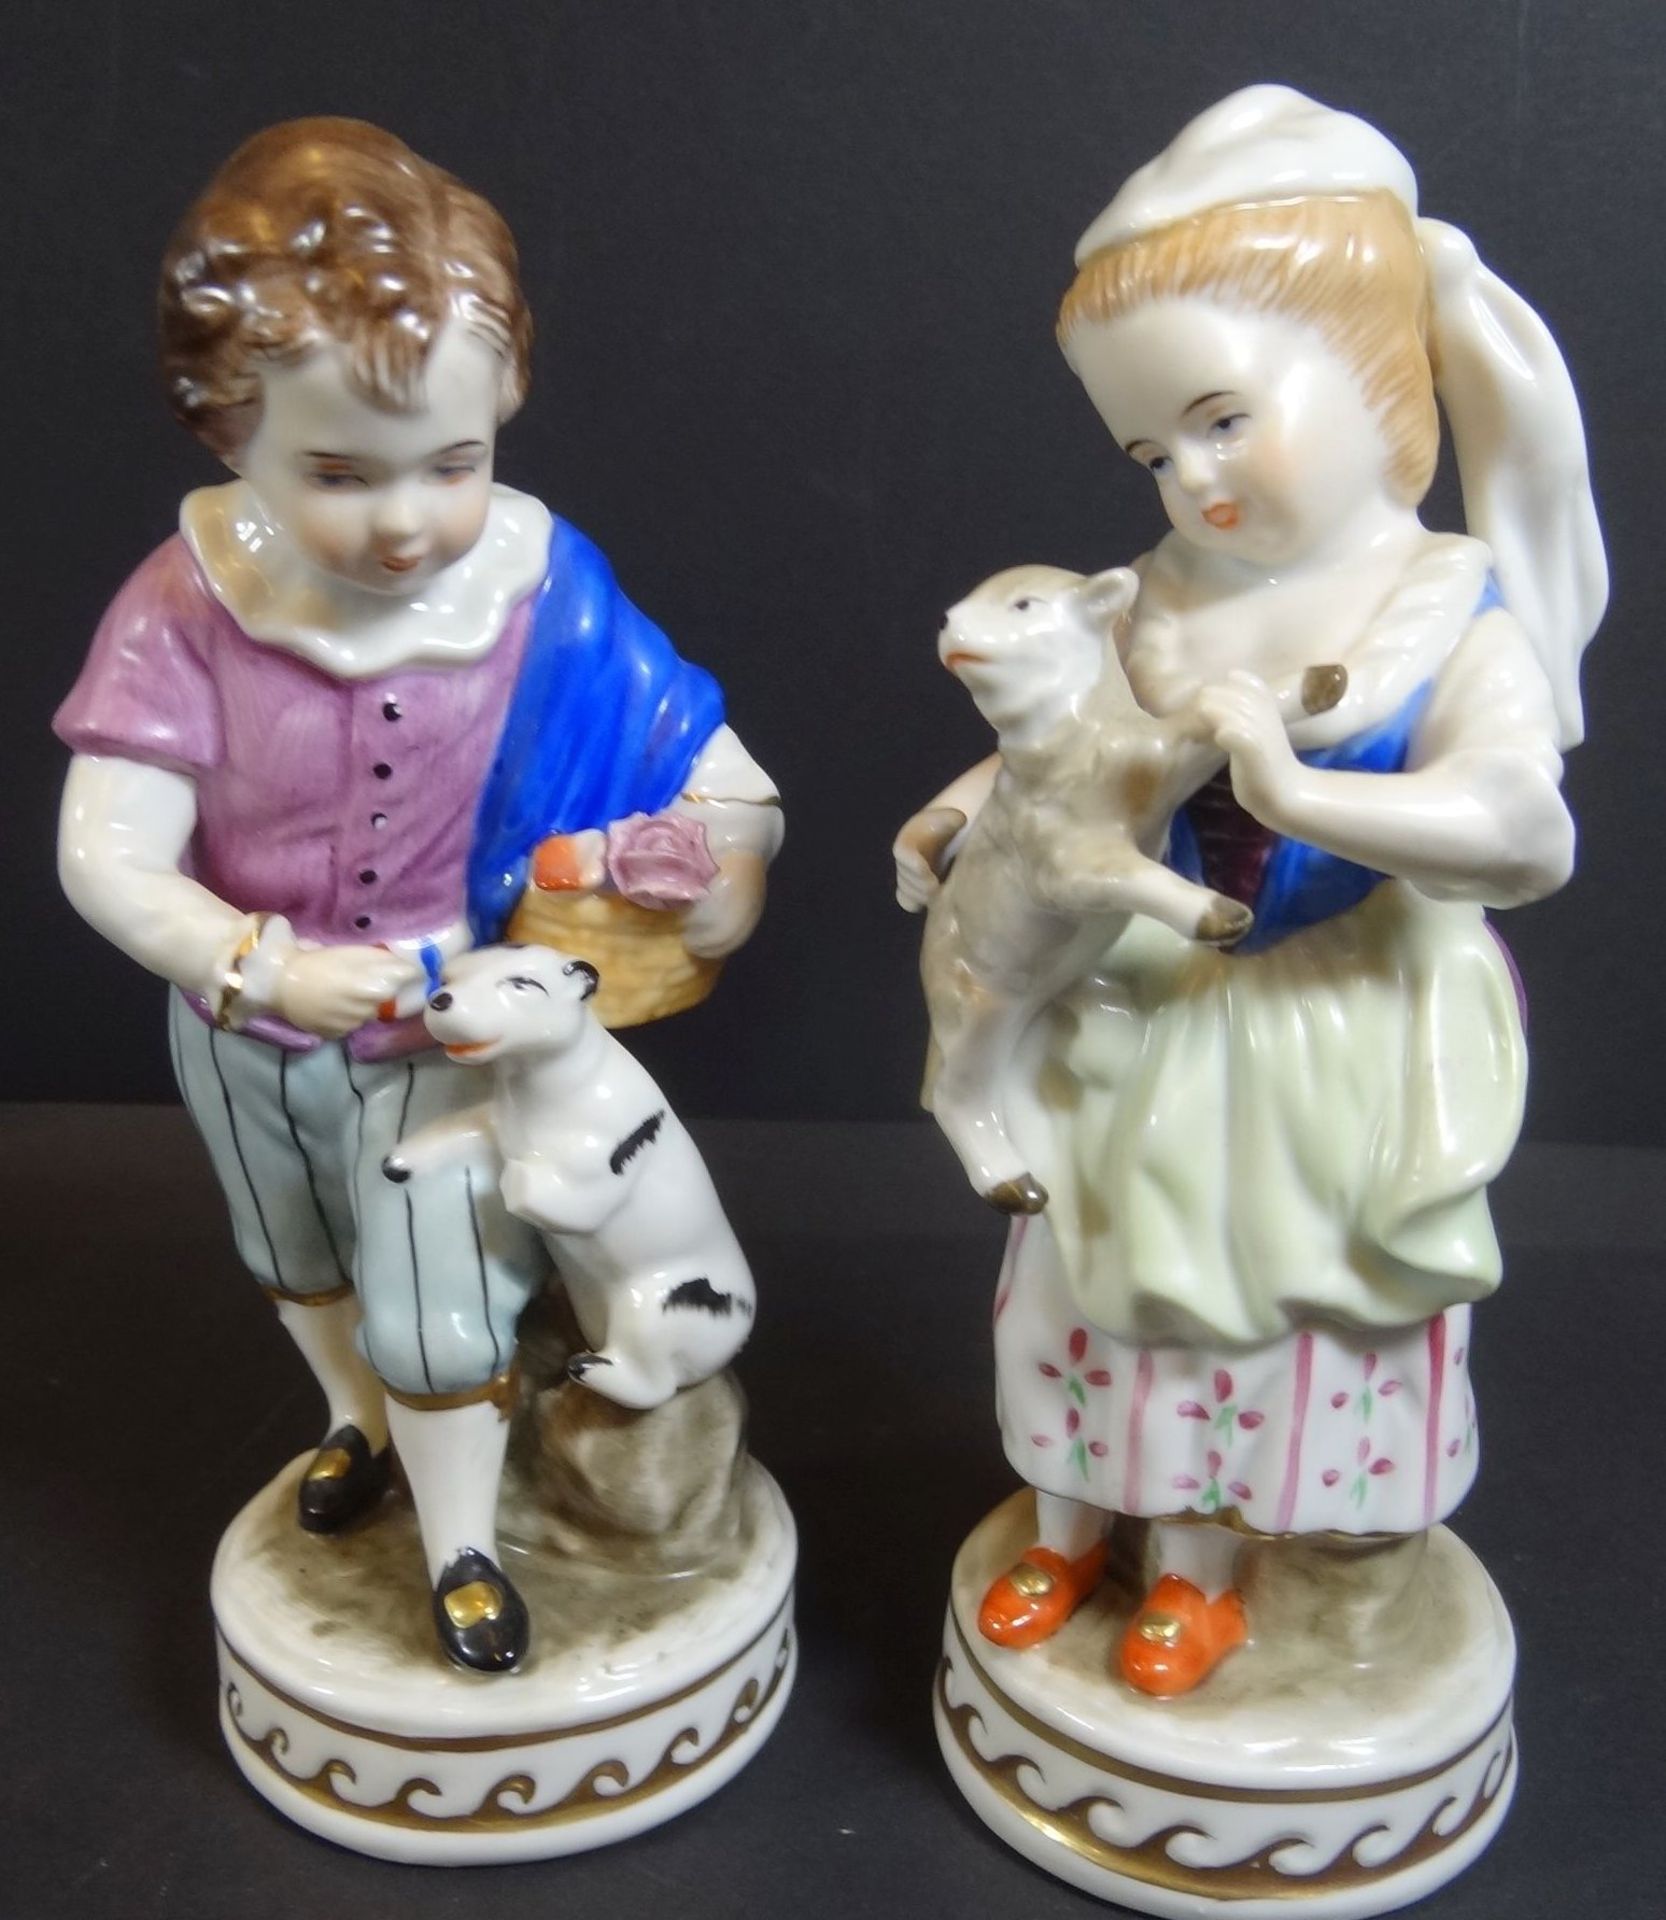 Porzellanfigur "Royal" Kinderpaar mit Tieren, handbemalt, H-16 cm,